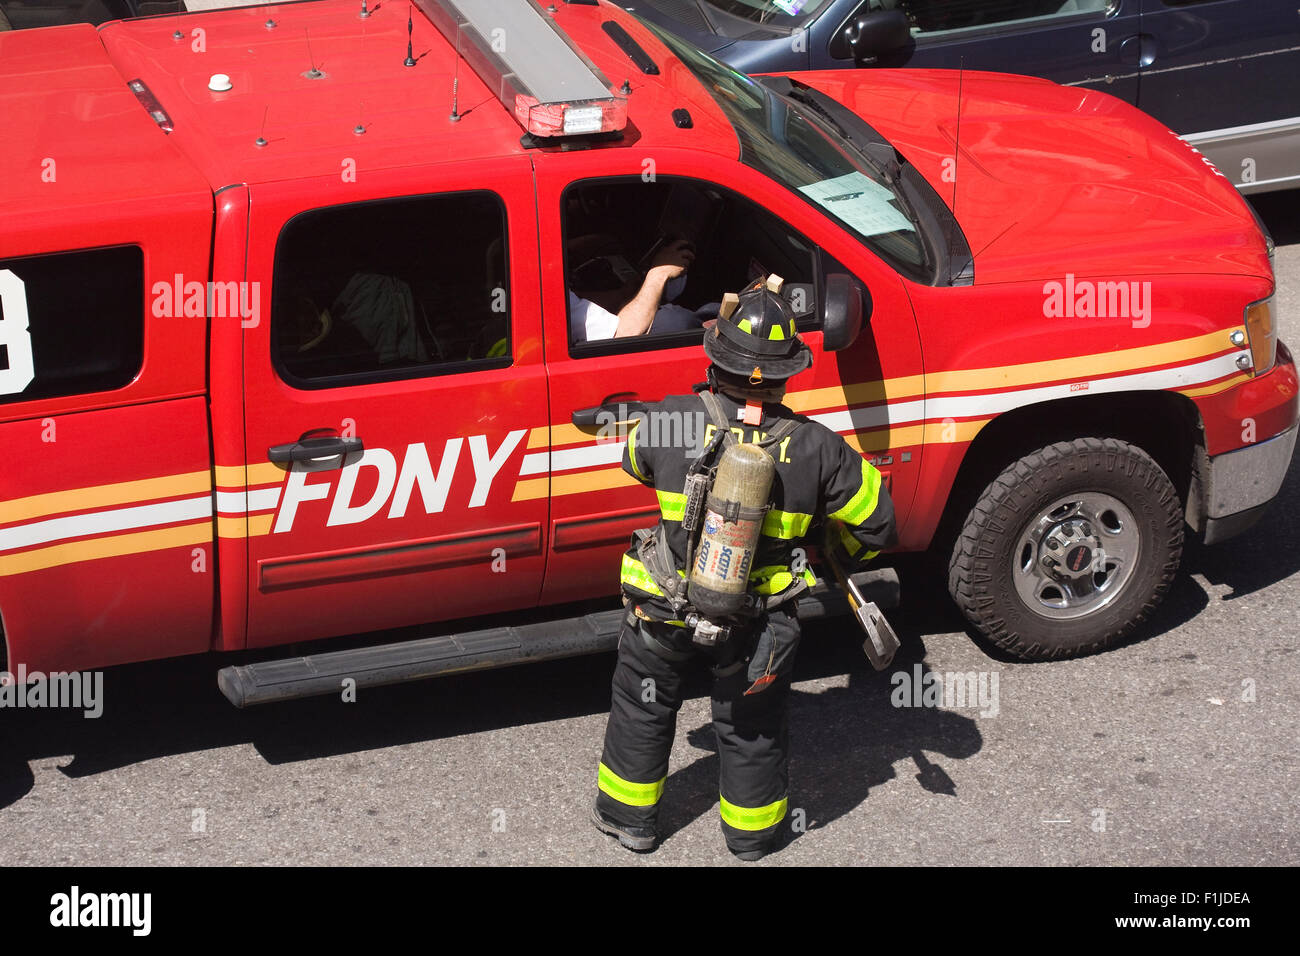 FDNY pompier dans un équipement complet parle avec son superviseur dans une camionnette rouge dans la rue. Banque D'Images